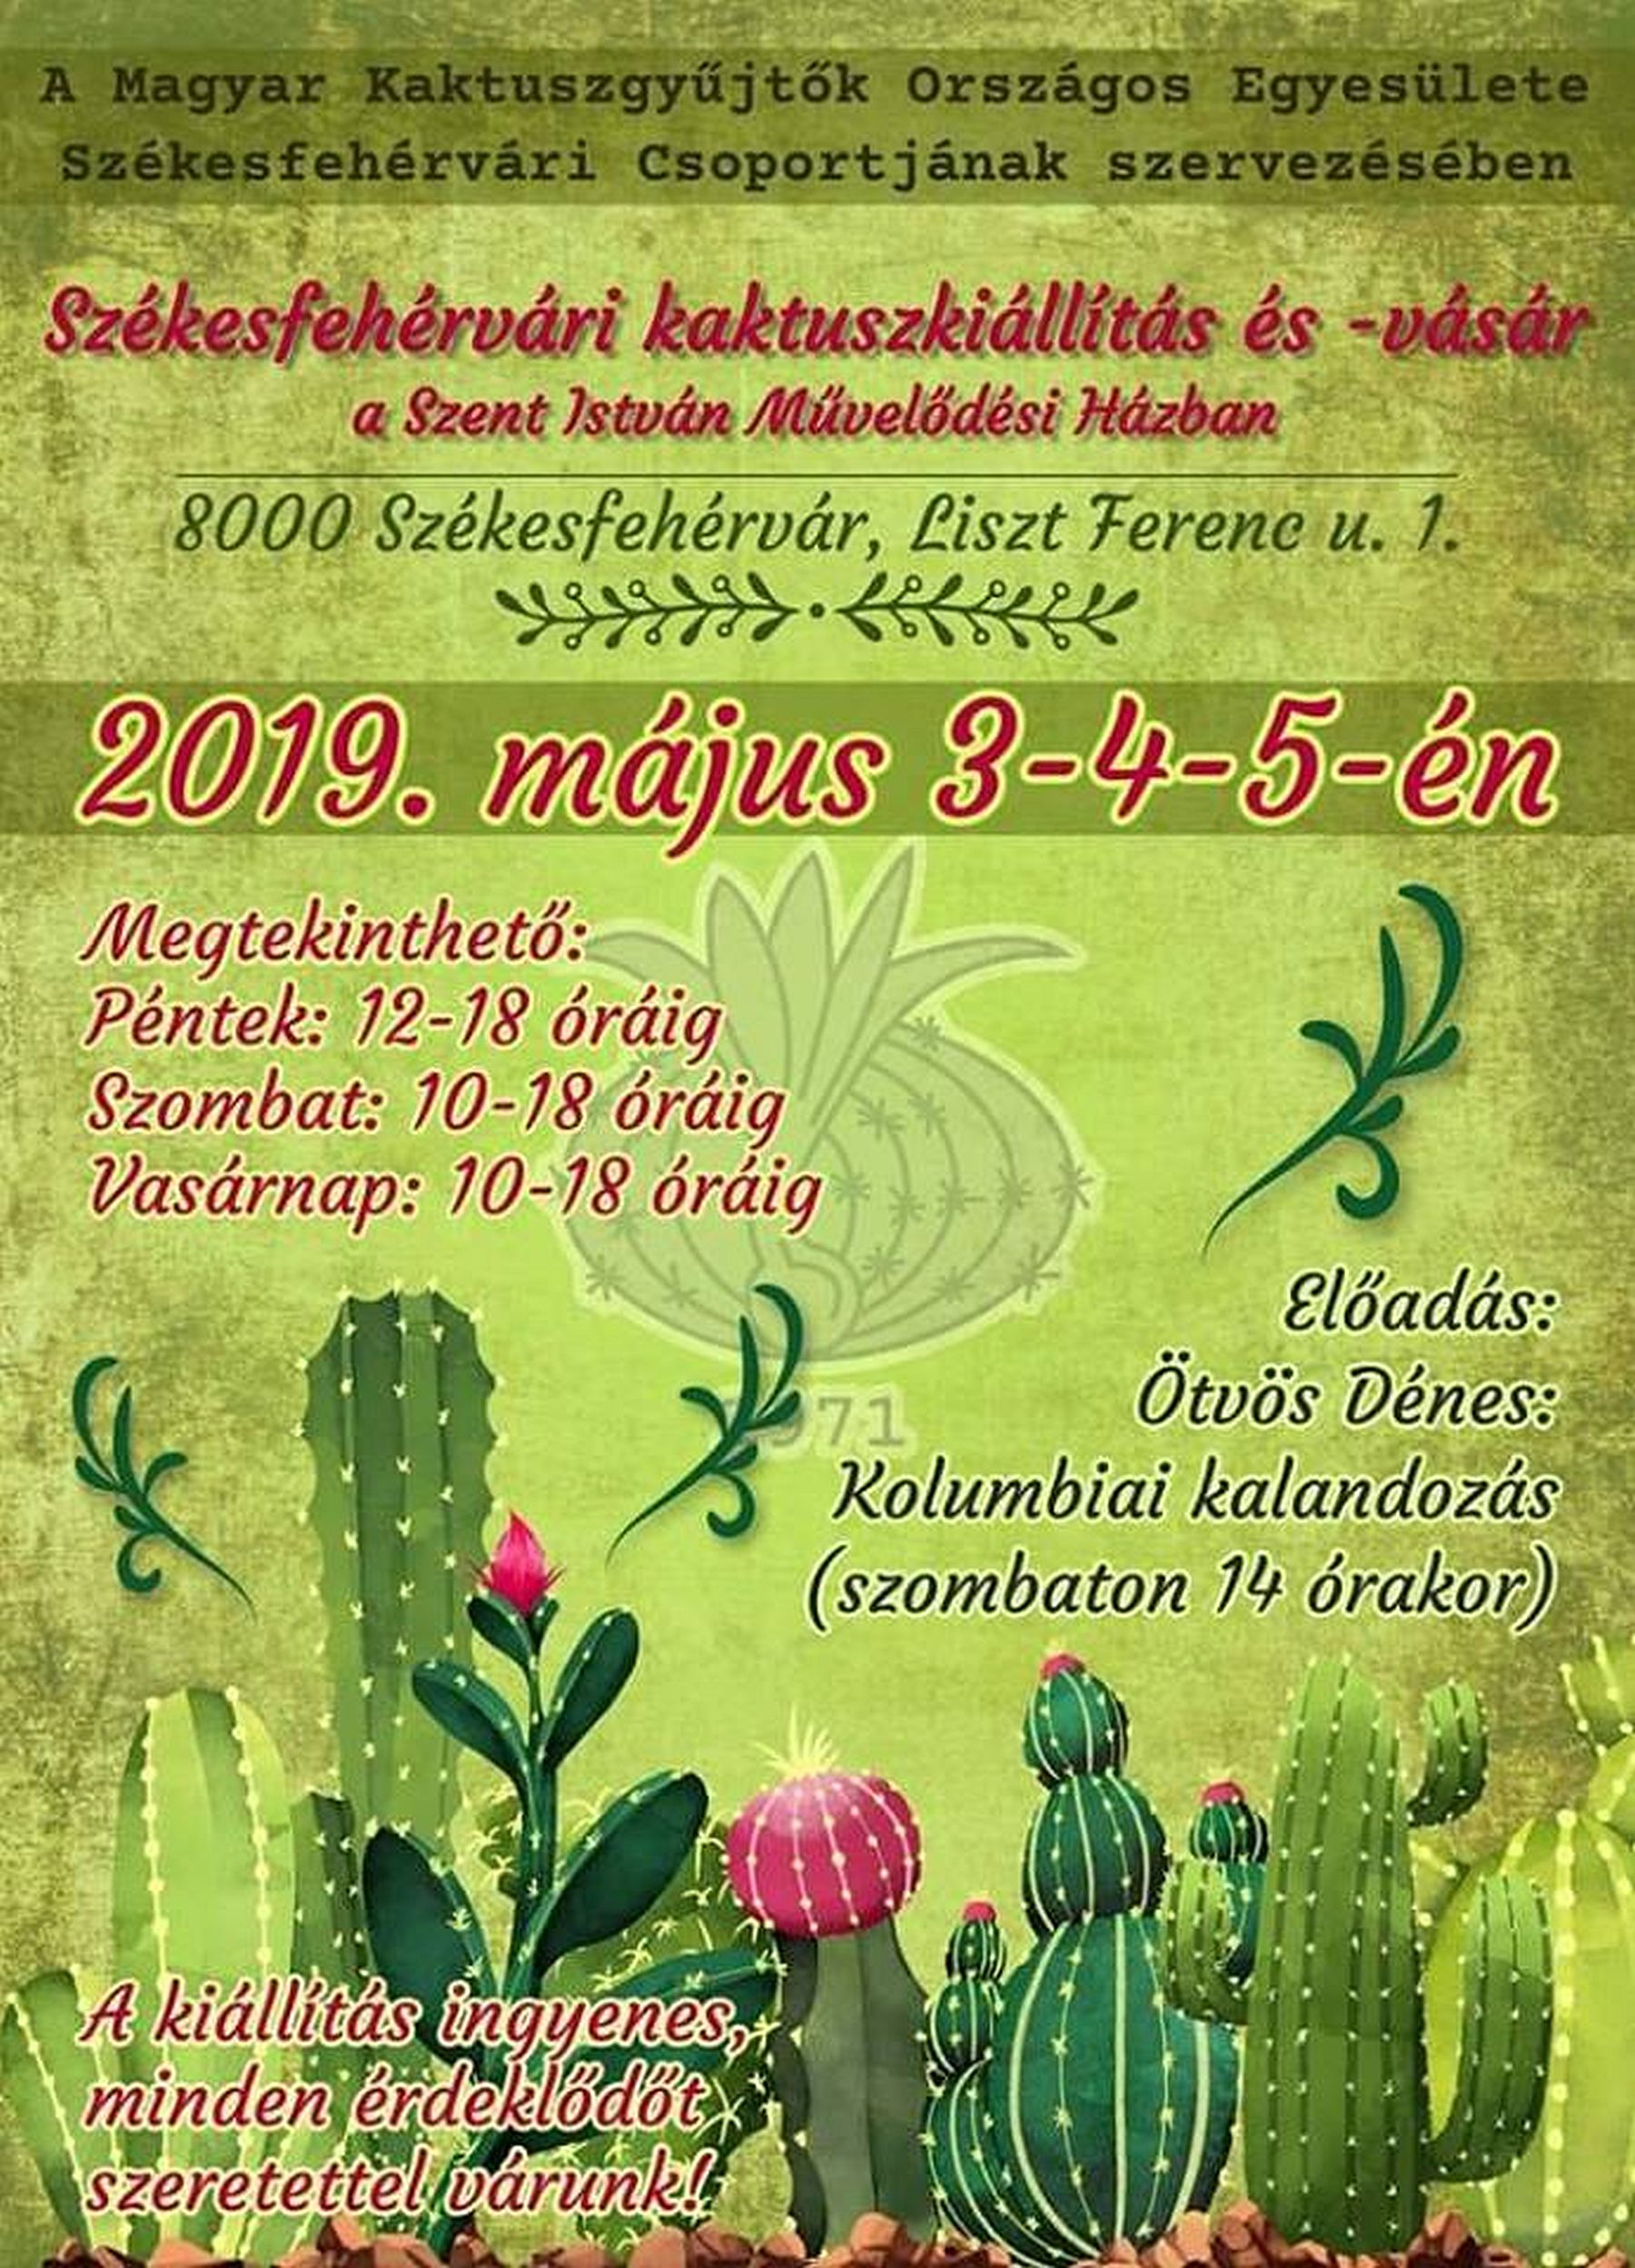 Kaktuszkiállítás és vásár lesz hétvégén a Szent István Művelődési Házban